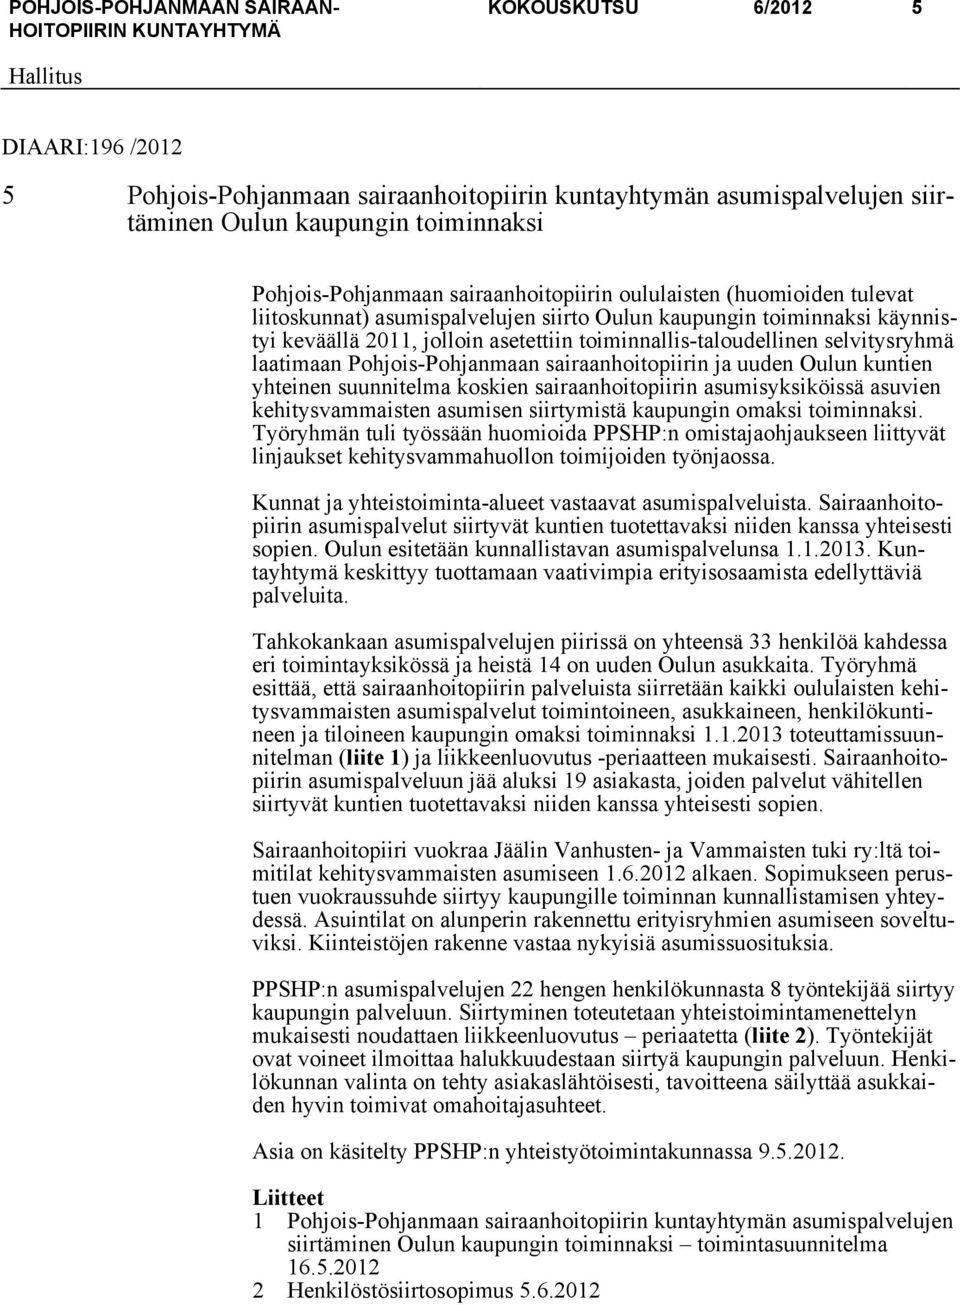 Pohjois-Pohjanmaan sairaanhoitopiirin ja uuden Oulun kuntien yhteinen suunnitelma koskien sairaanhoitopiirin asumisyksiköissä asuvien kehitysvammaisten asumisen siirtymistä kaupungin omaksi